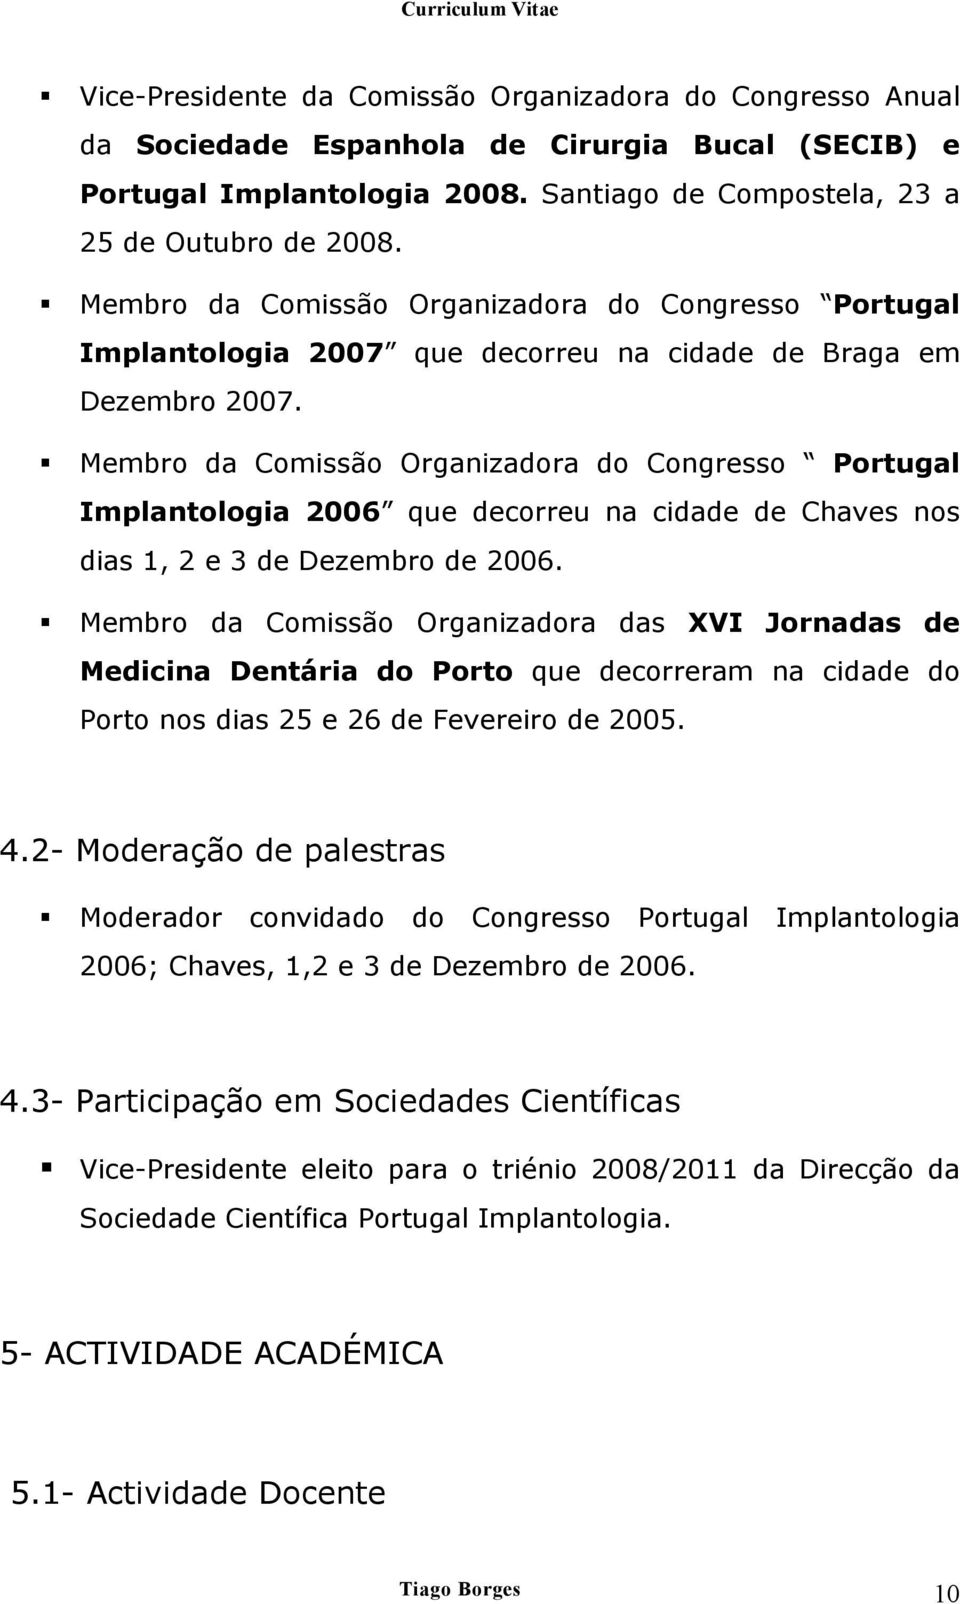 Membro da Comissão Organizadora do Congresso Portugal Implantologia 2006 que decorreu na cidade de Chaves nos dias 1, 2 e 3 de Dezembro de 2006.